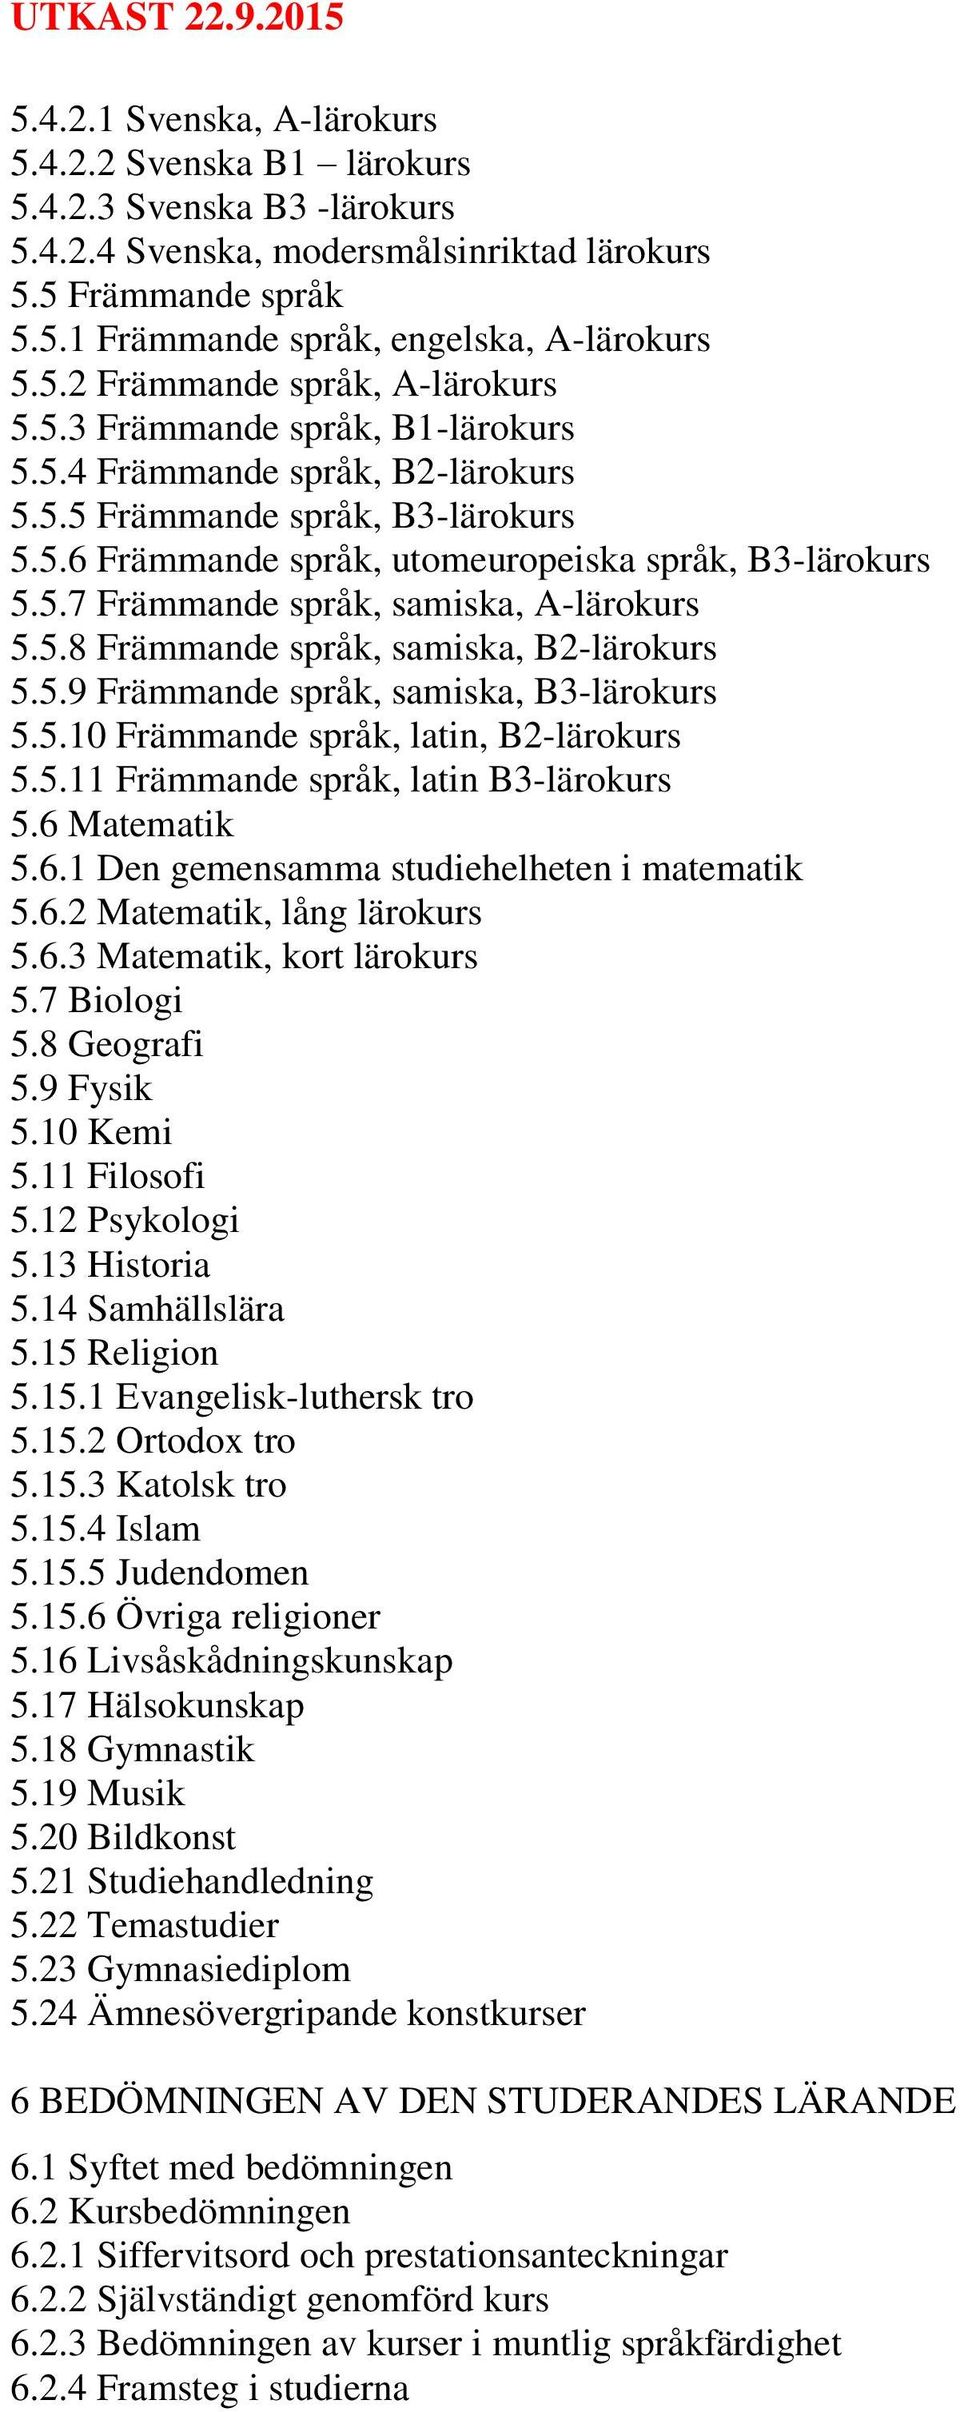 5.8 Främmande språk, samiska, B2-lärokurs 5.5.9 Främmande språk, samiska, B3-lärokurs 5.5.10 Främmande språk, latin, B2-lärokurs 5.5.11 Främmande språk, latin B3-lärokurs 5.6 